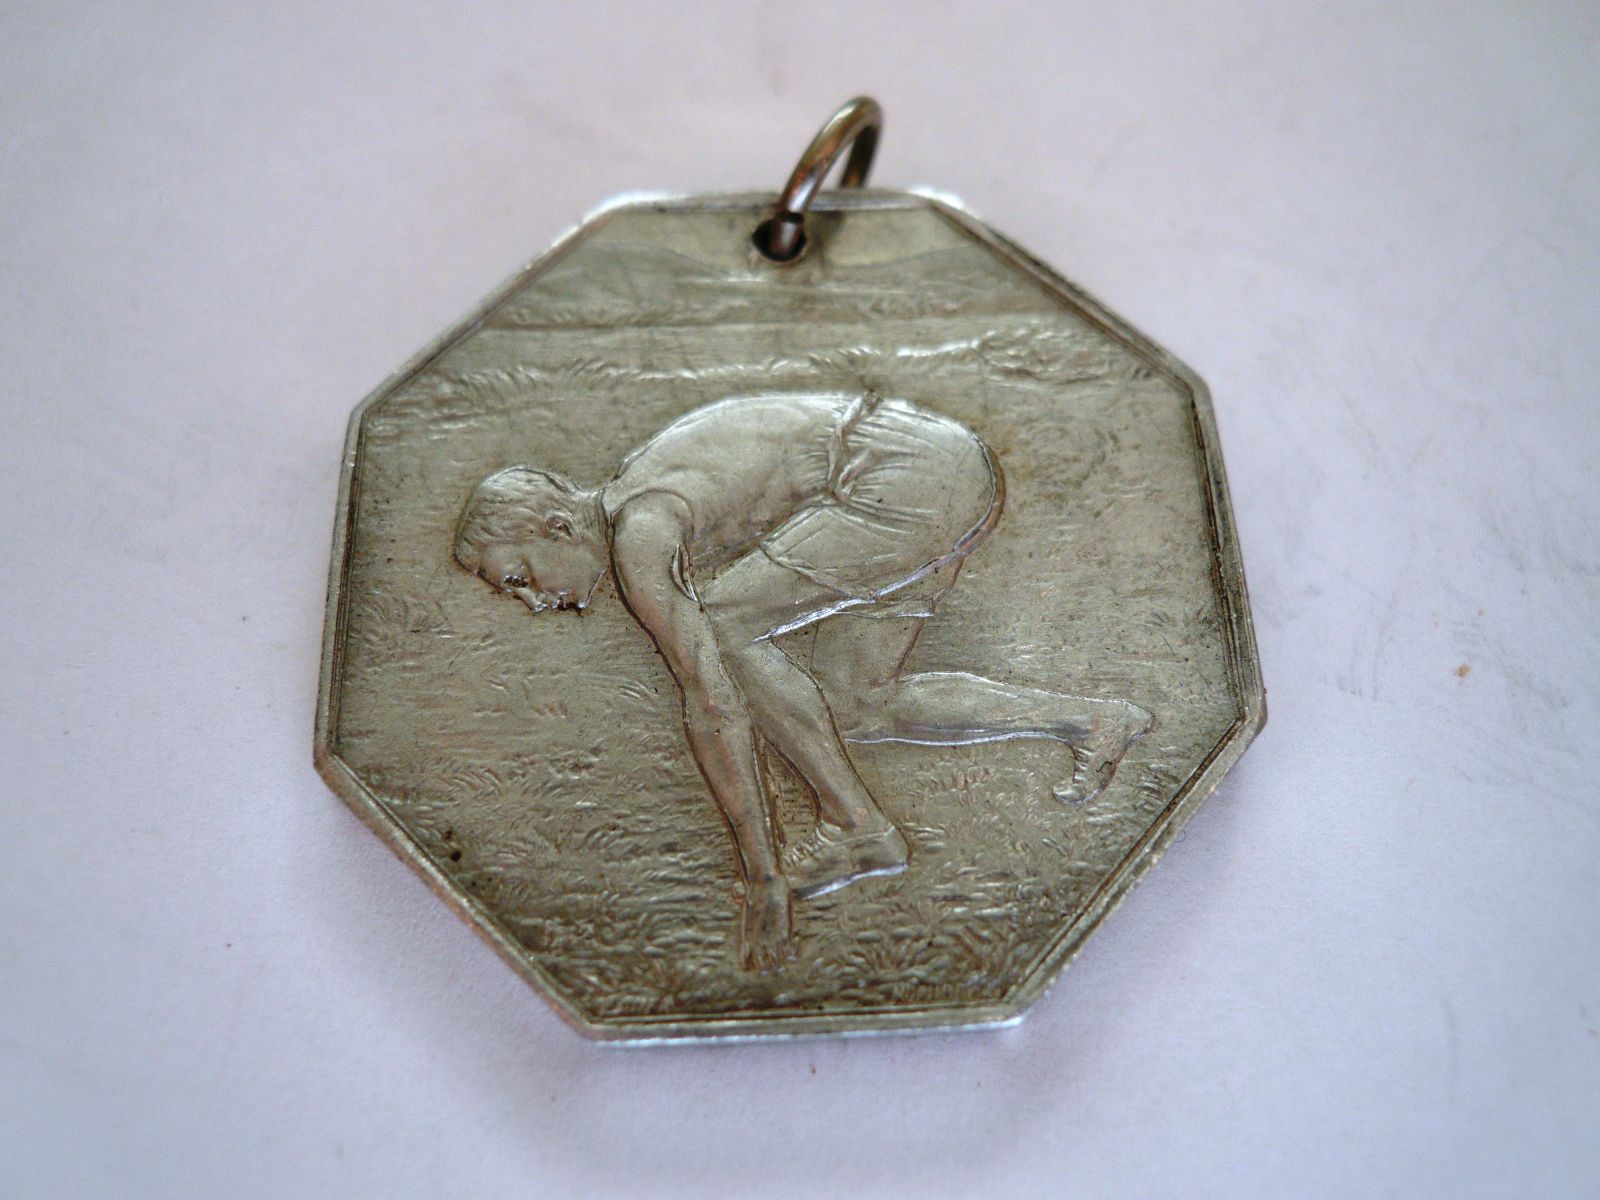 běh na 100 metrů, 1906, Al, Čechy